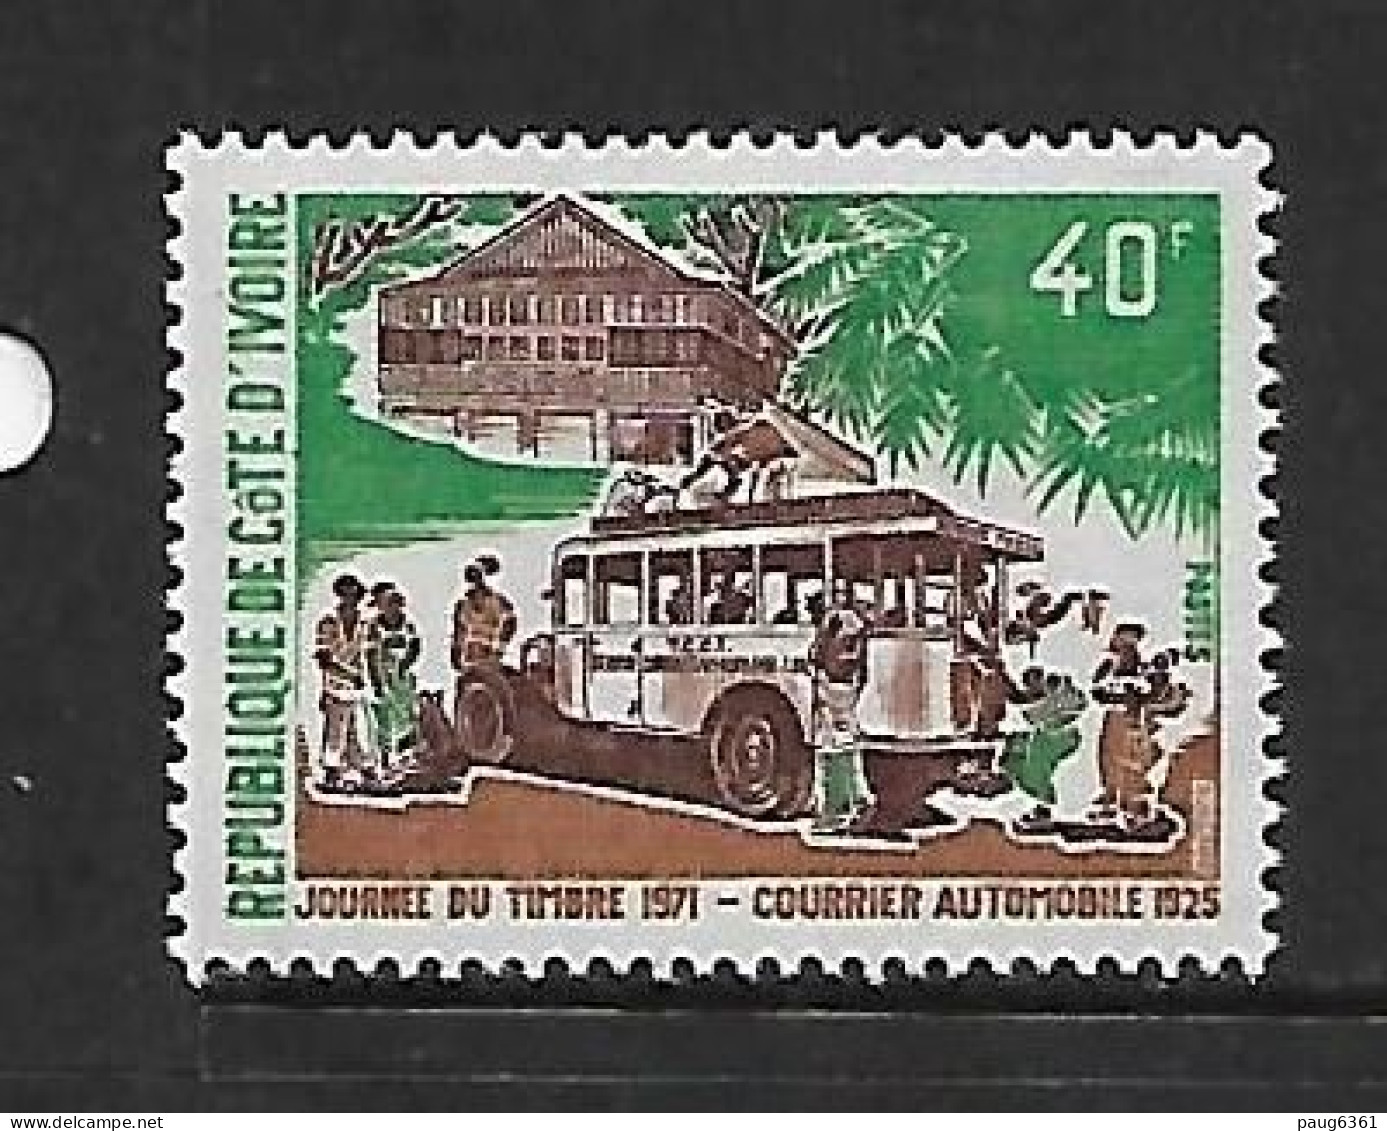 COTE D'IVOIRE 1971  JOURNEE DU TIMBRE-COURRIER AUTOMOBILE  YVERT N°311   NEUF MNH** - Busses